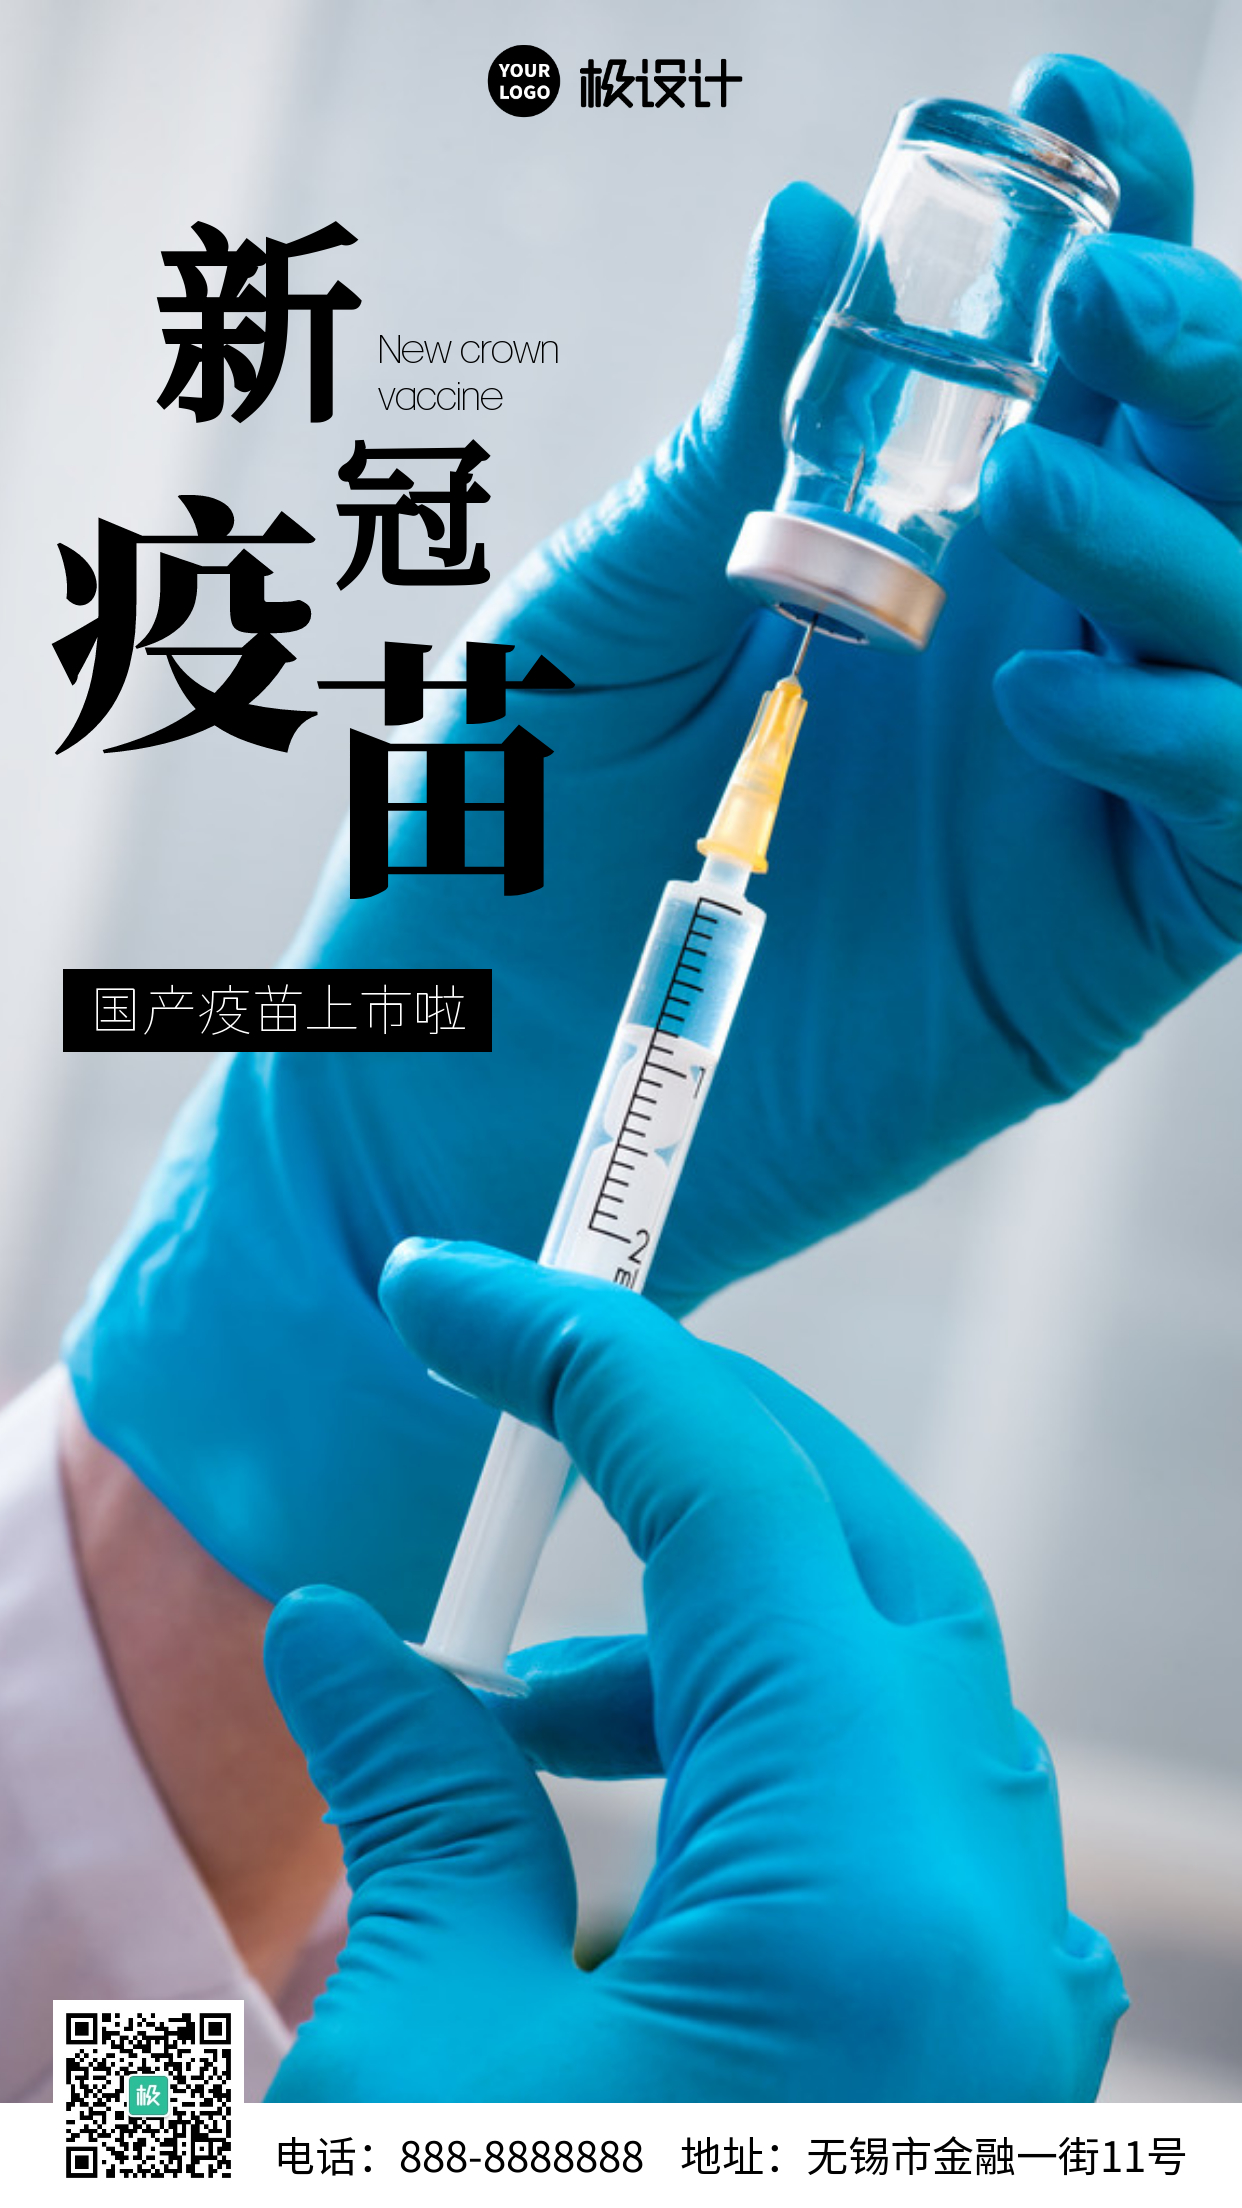 简约风格国产新冠病毒疫苗上市宣传手机海报